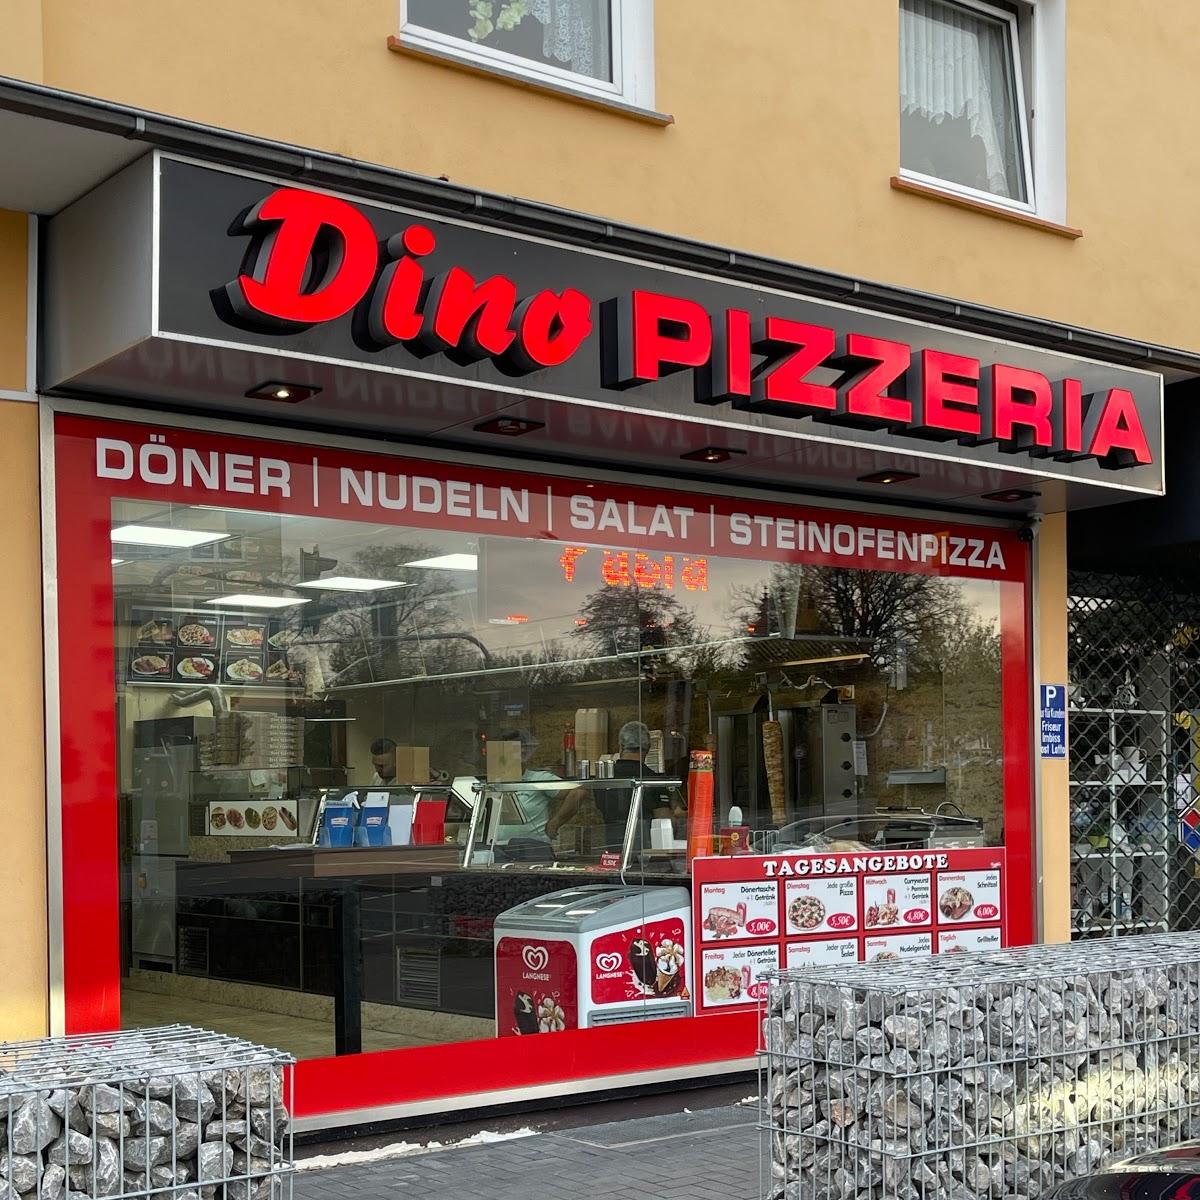 Restaurant "Dino Pizzeria" in Dortmund